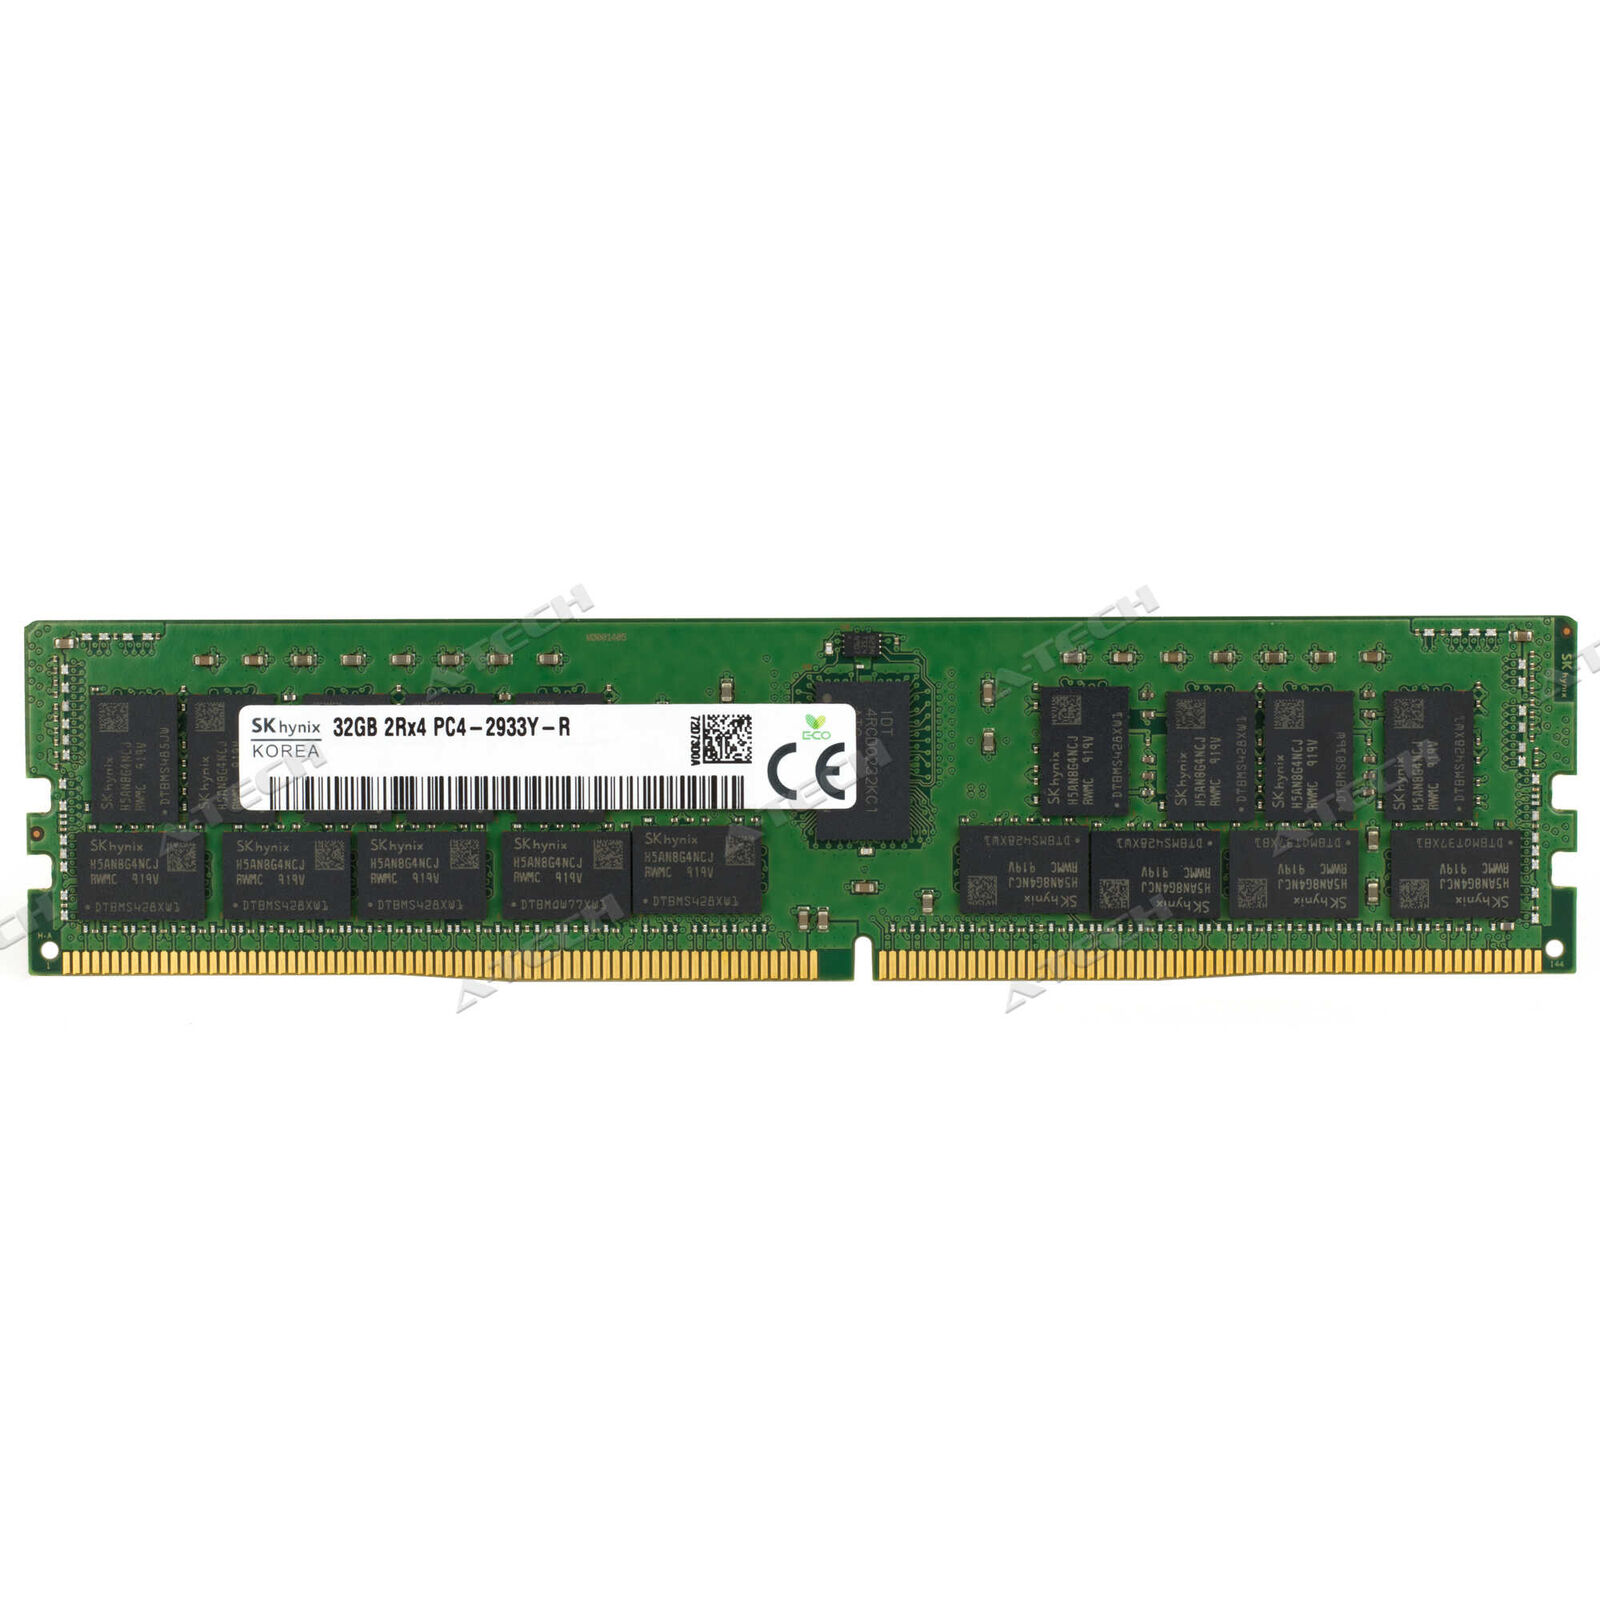 Hynix 32GB 2Rx4 PC4-2933Y RDIMM DDR4-23400 ECC REG Registered Server Memory RAM